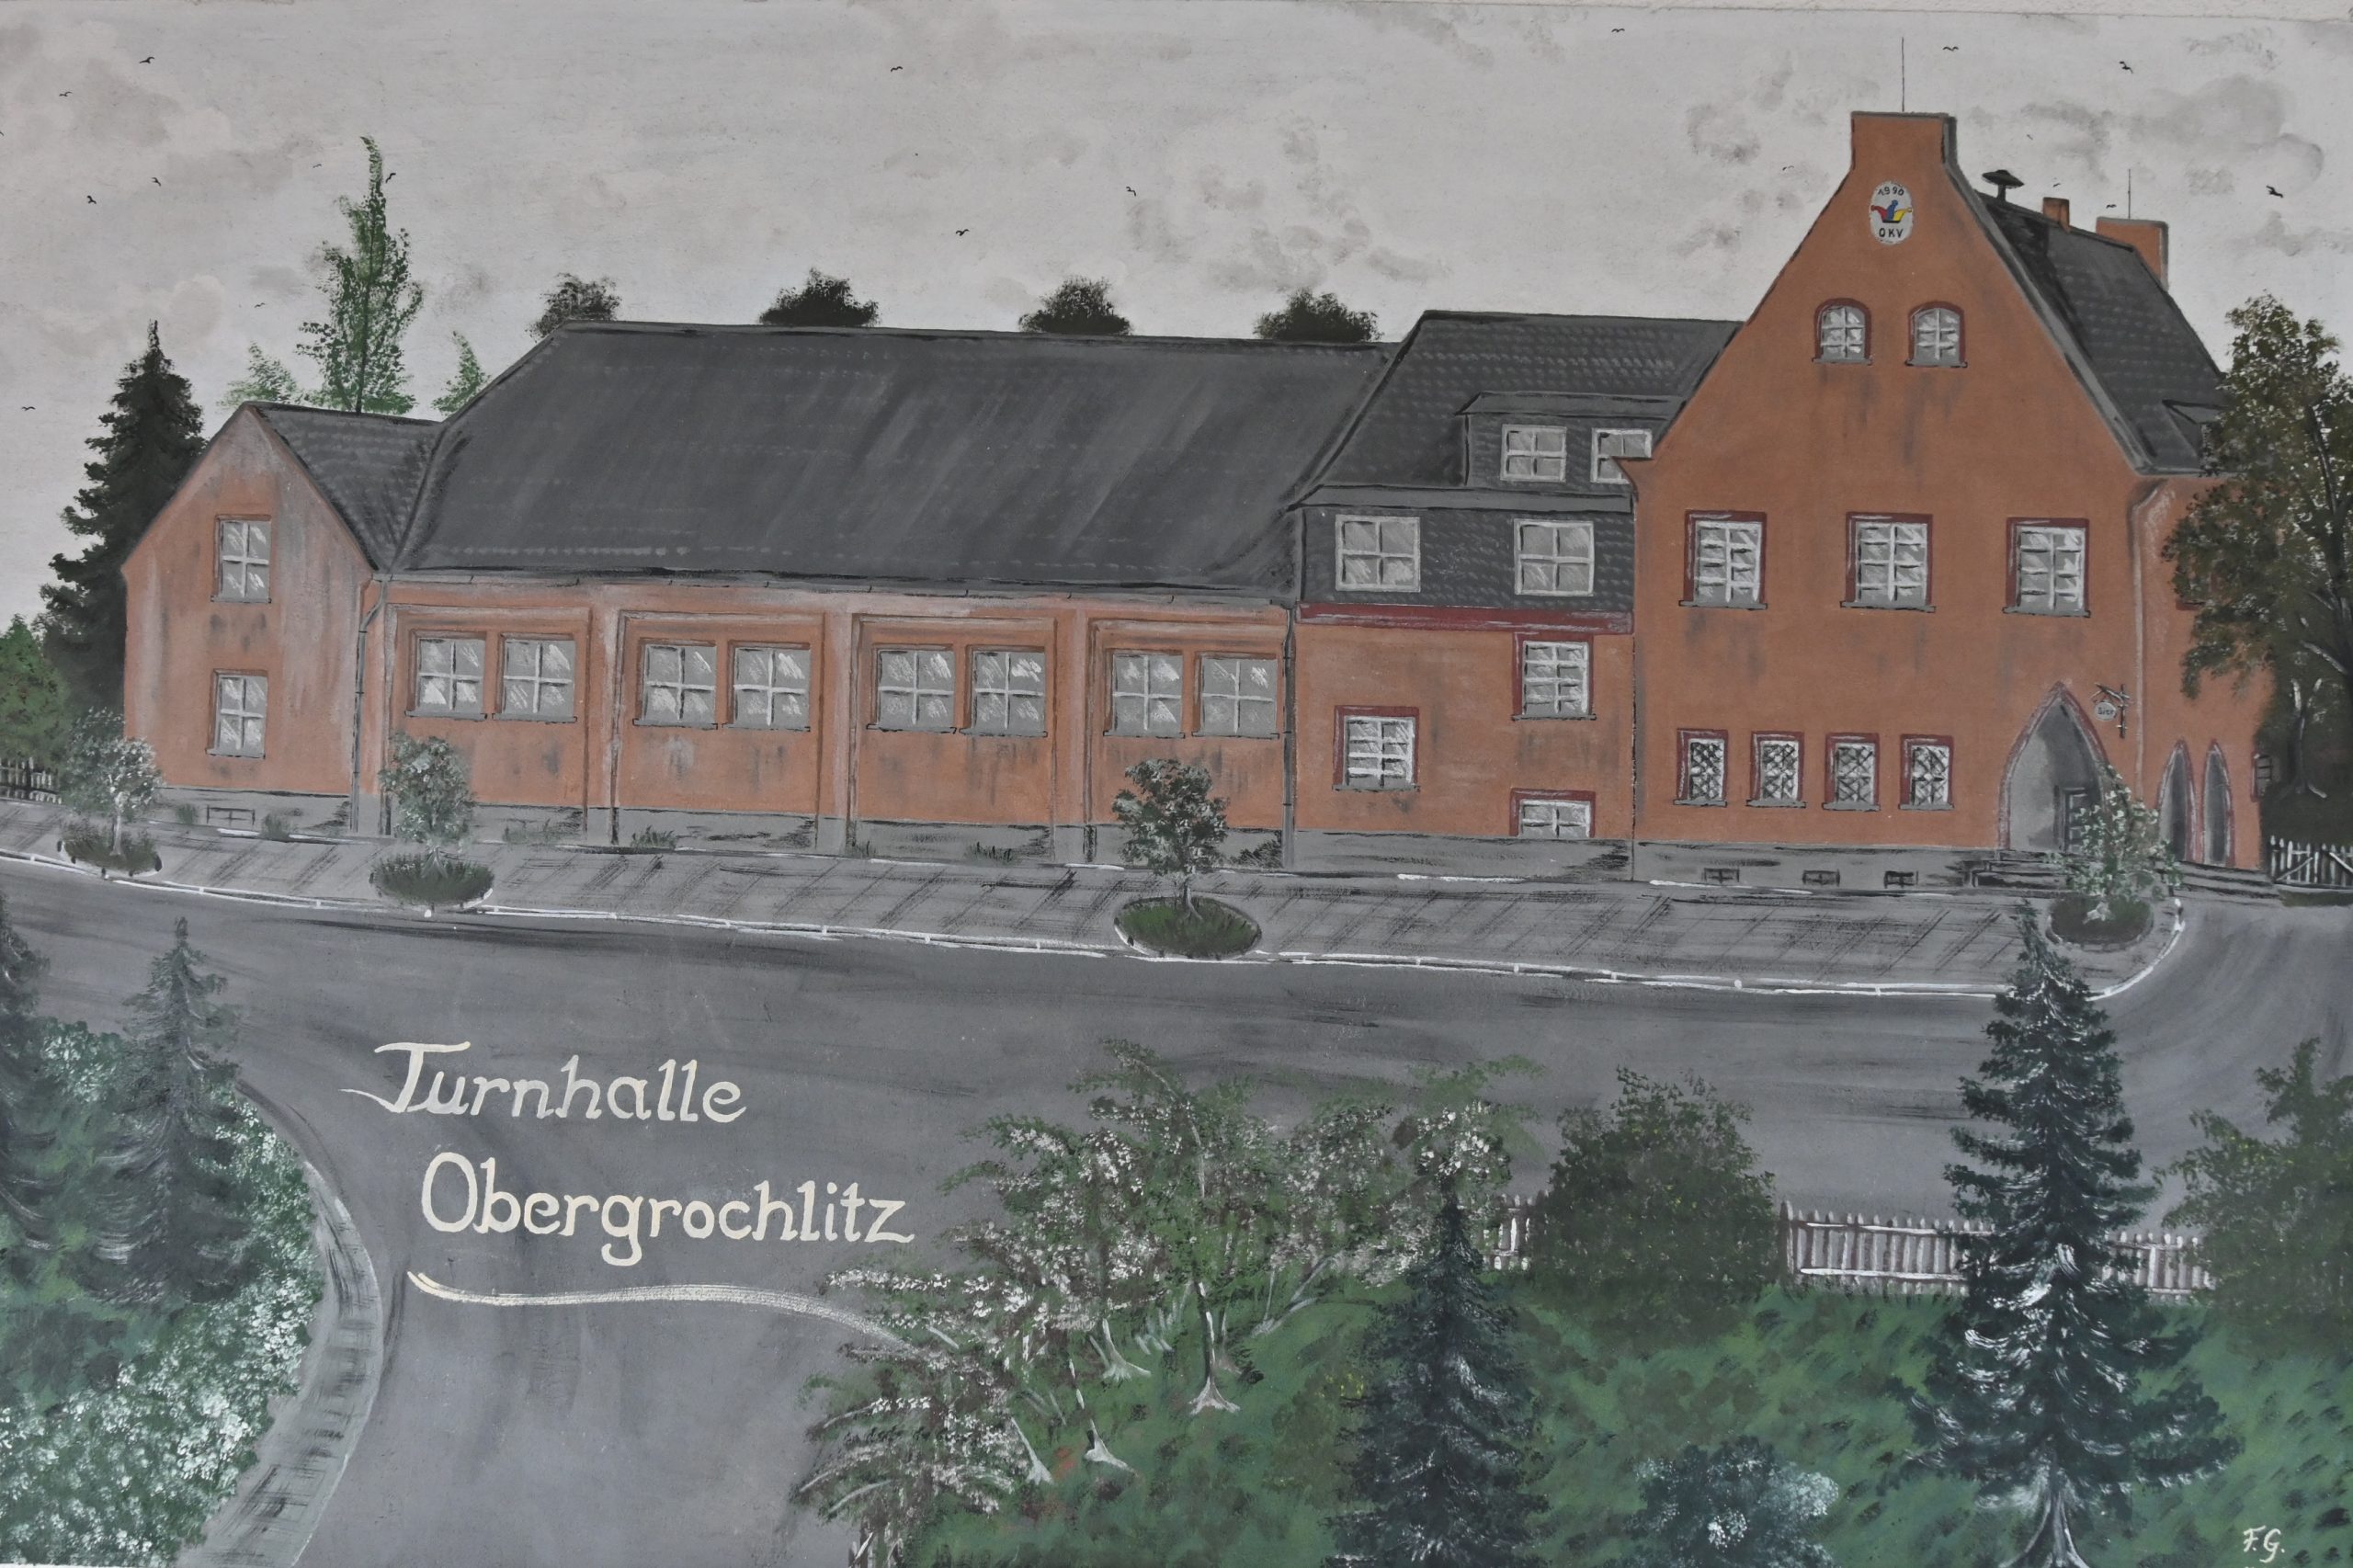 Turnhalle Obergrochlitz